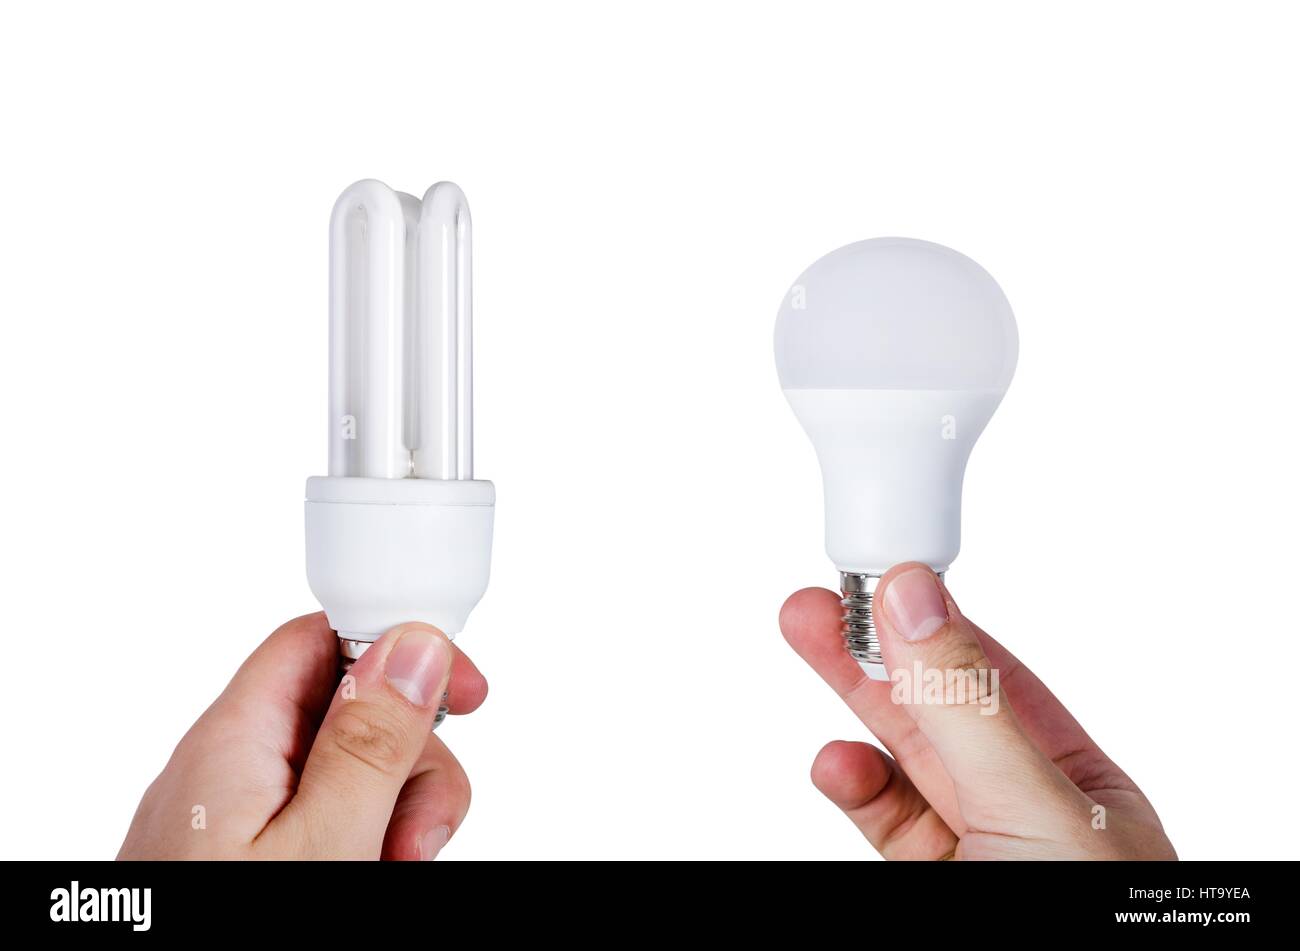 Vergleichen Sie zwei verschiedene Arten von Lampen. Energie sparen Lampe oder Wahl geführt. Stockfoto